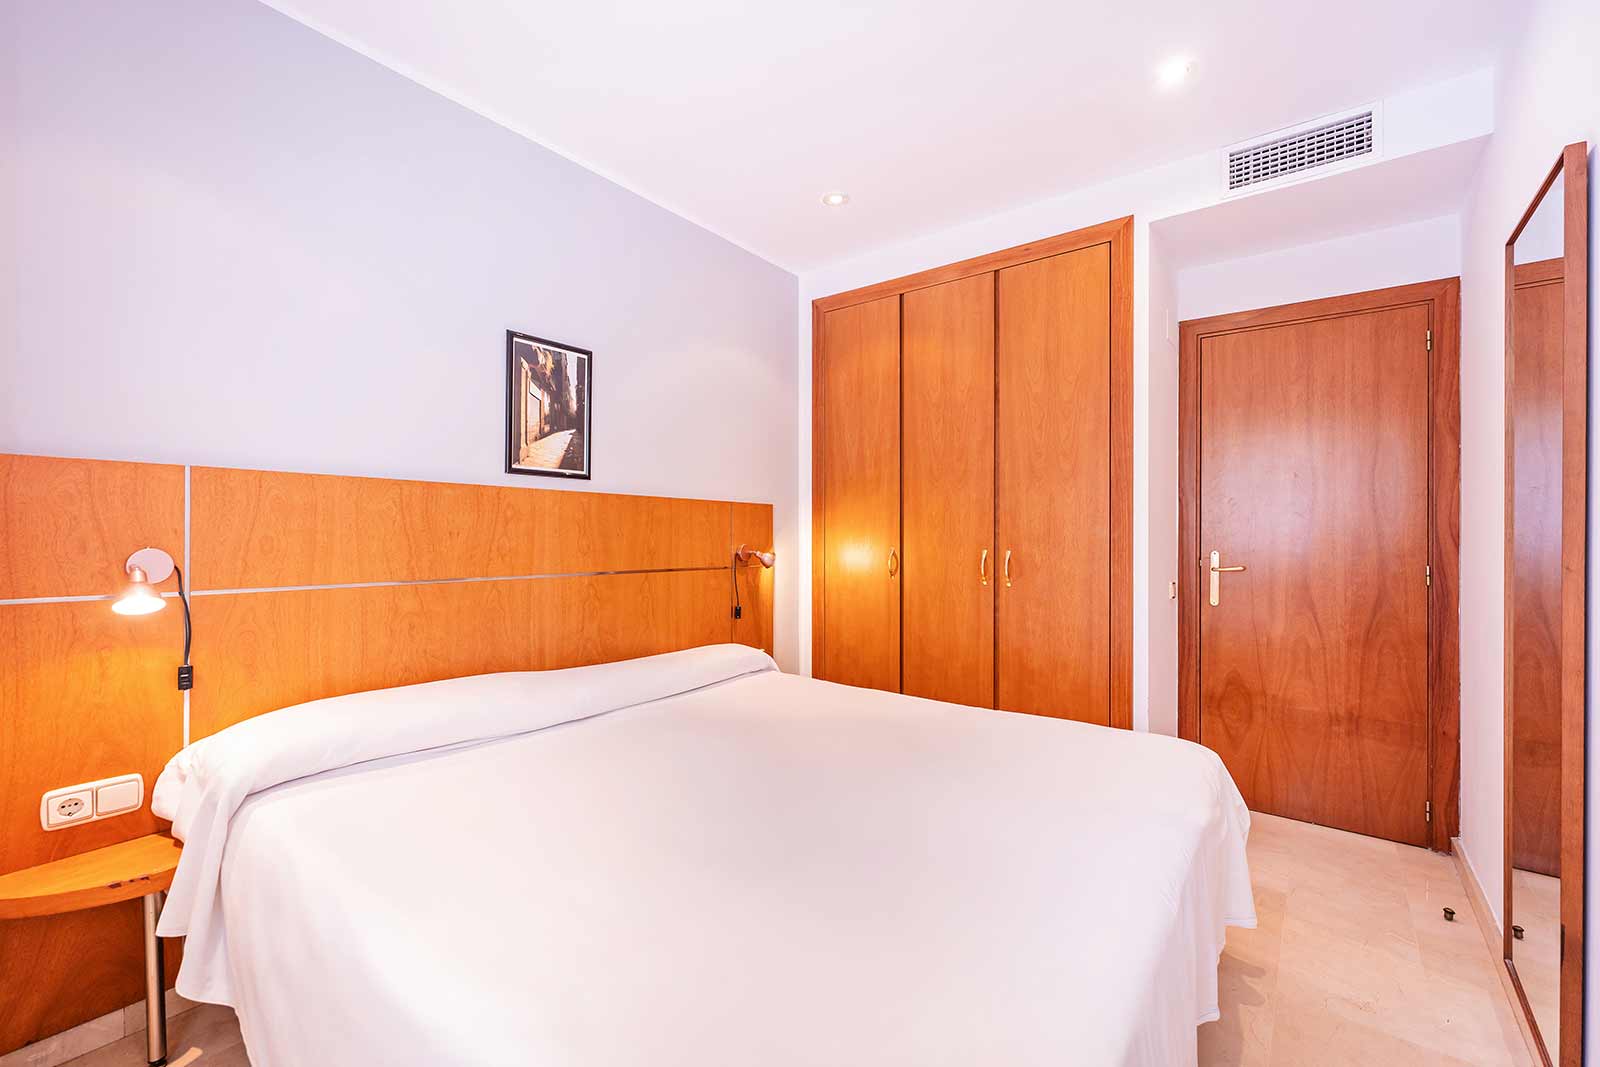 apartaments marina barcelona habitaciones doble cama matrimonio armarios - Apartamentos en Barcelona - Apartamentos en Barcelona